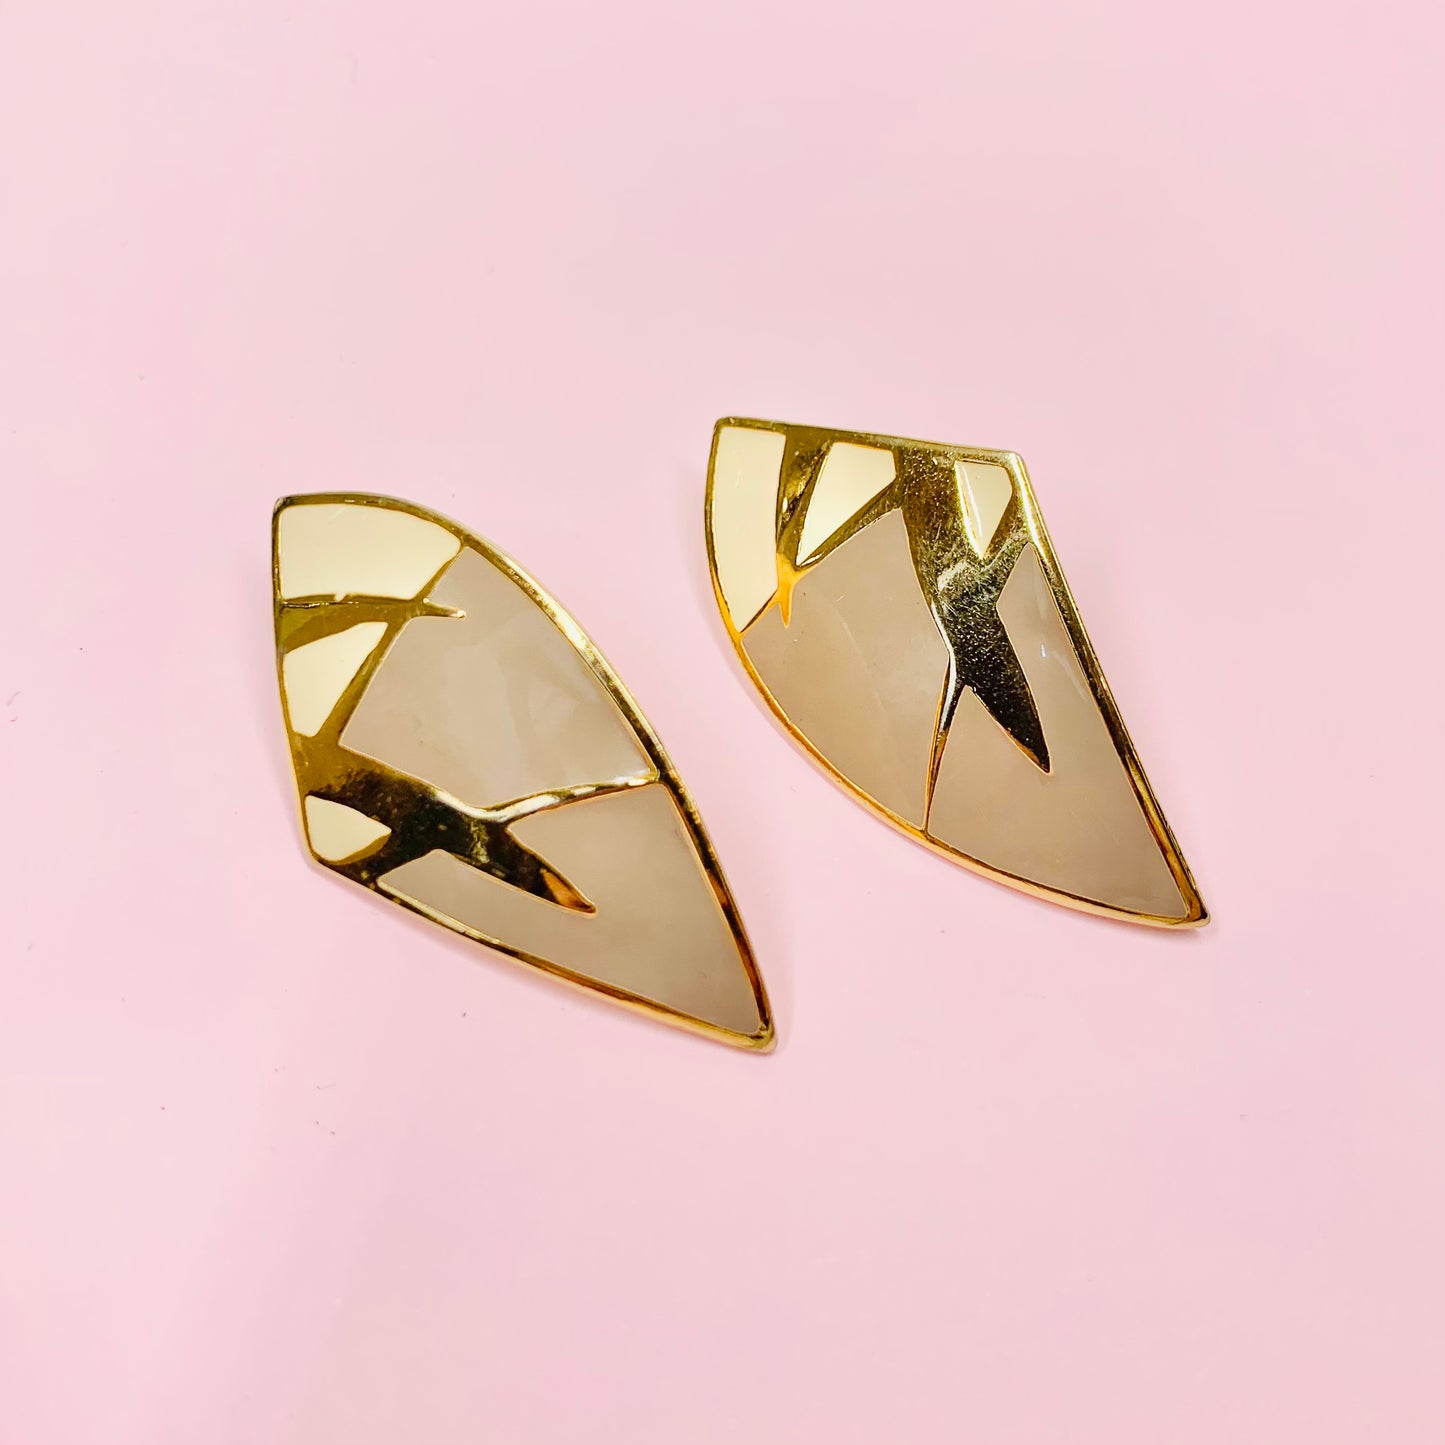 Rare 1970s Italian triple gold plated enamel earrings